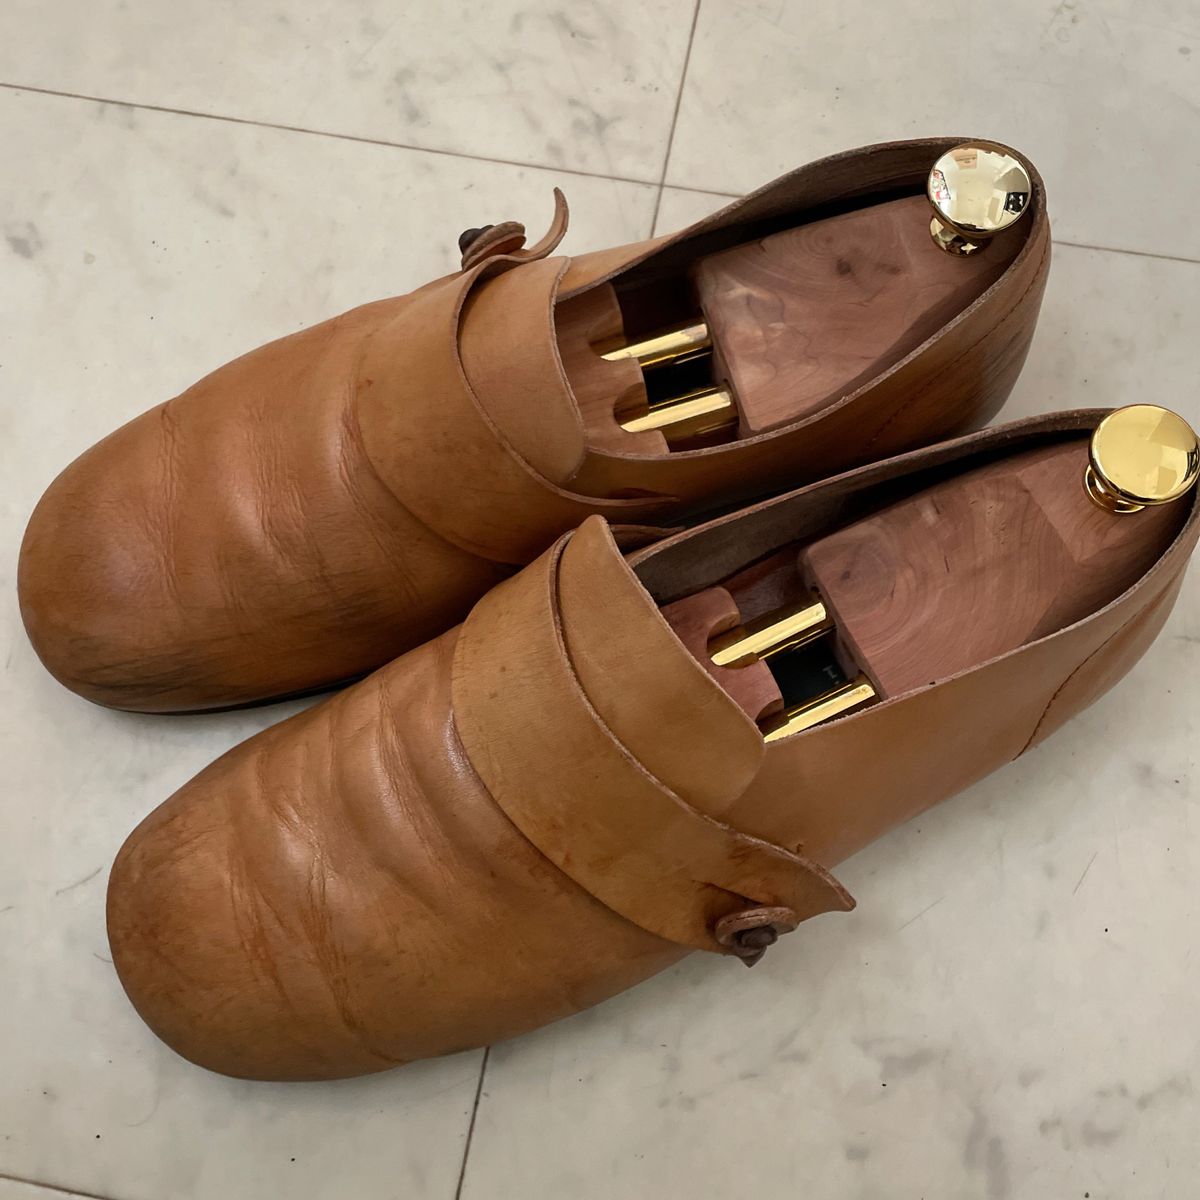 スペイン製 本革 メンズ シューズ 靴 25.5cm カジュアル レザー 茶色 ブラウン 革靴